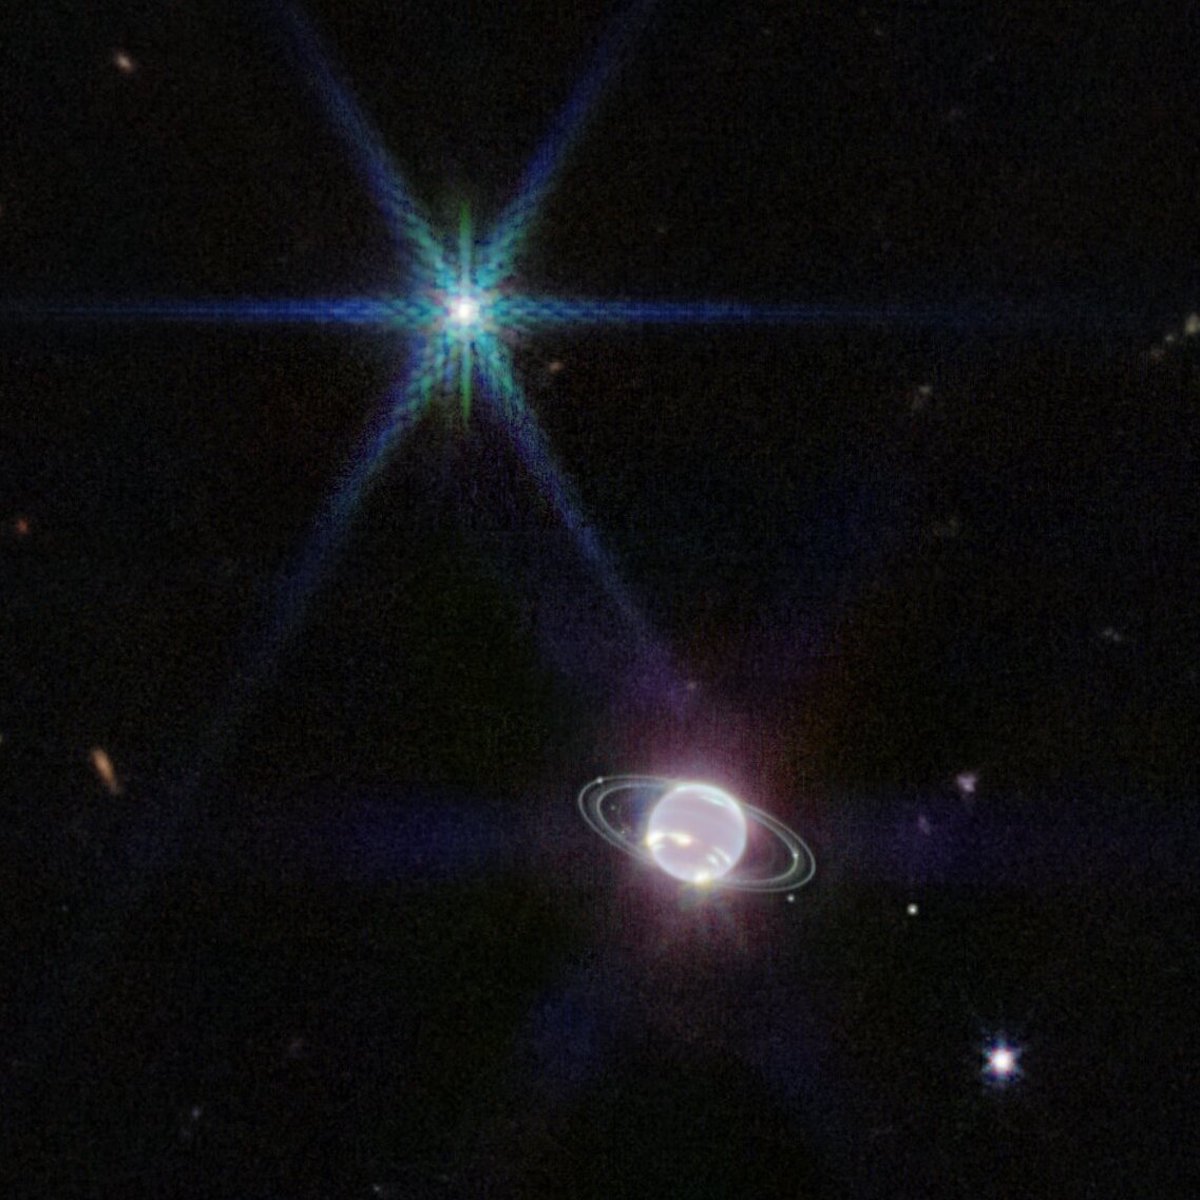 Immagine di Nettuno e del suo sistema di anelli in una straordinaria immagine del telescopio spaziale James Webb,  rilasciata recentemente. Sono visibili sette dei suoi quattordici satelliti attualmente conosciuti. Credit: NASA, ESA, CSA, and STScI